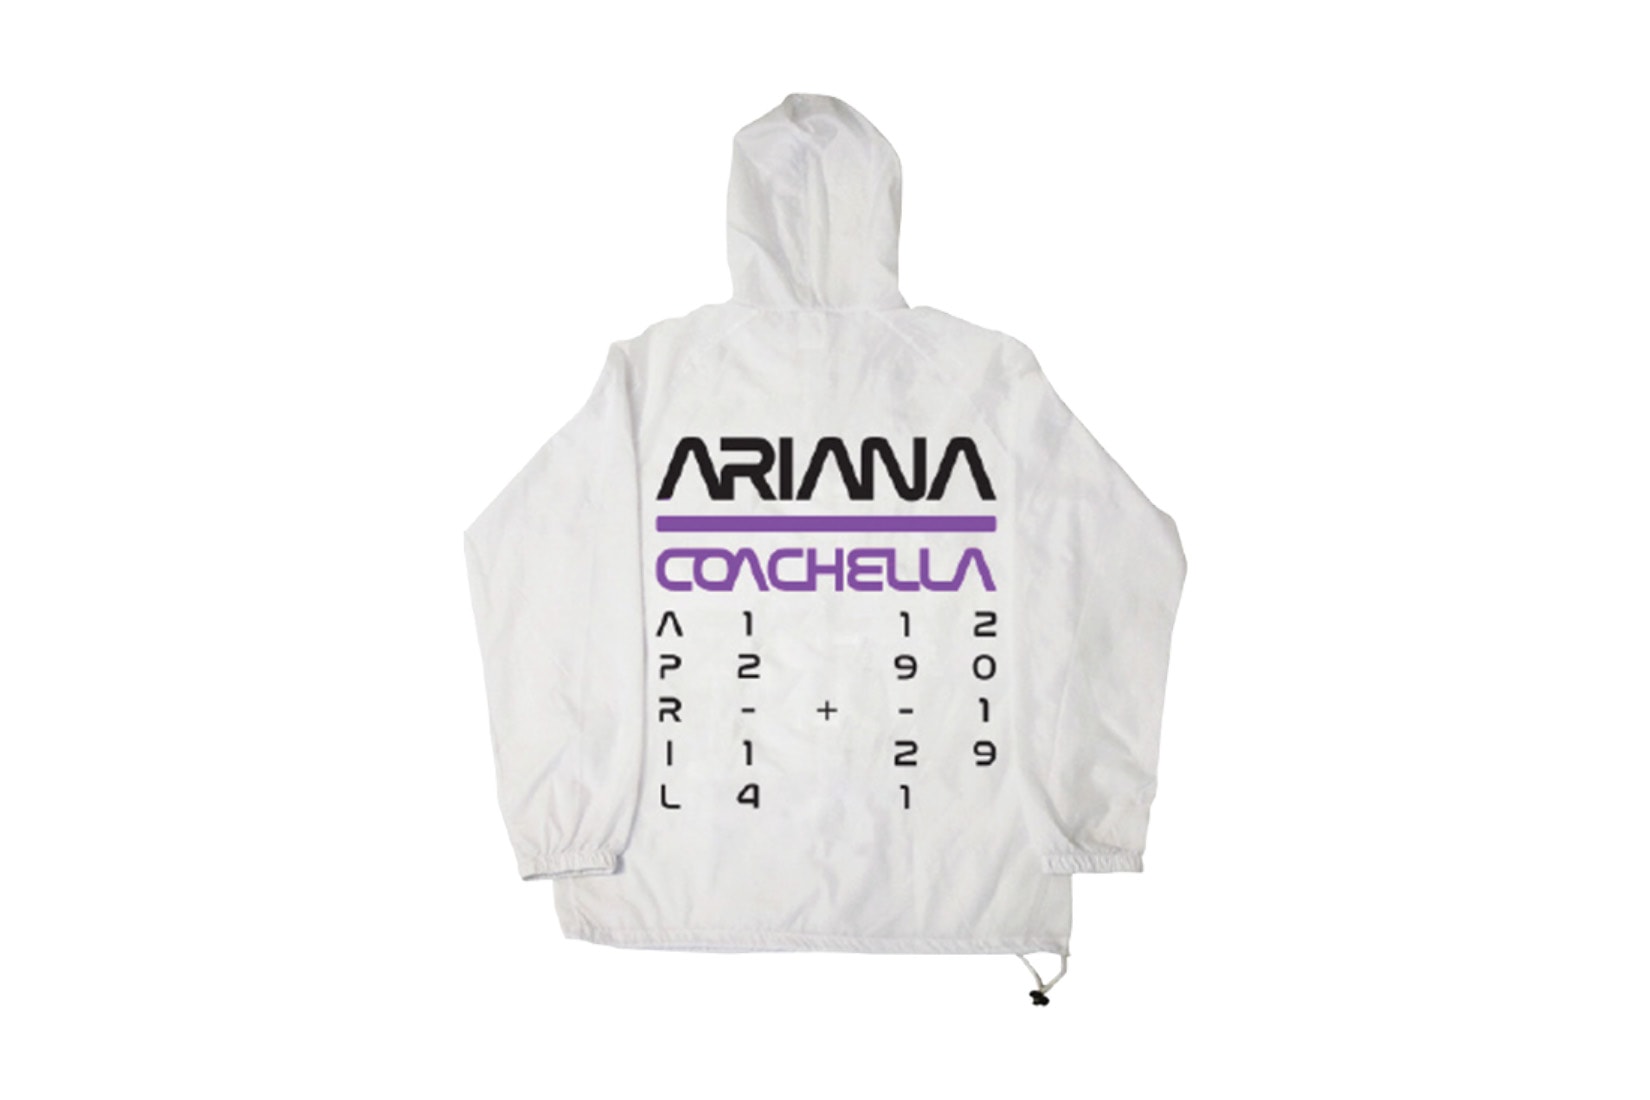 Ariana Grande NASA Coachella Merch Sweatshirt Hoodie T-Shirt Mask Glasses Anorak Aricehlla 